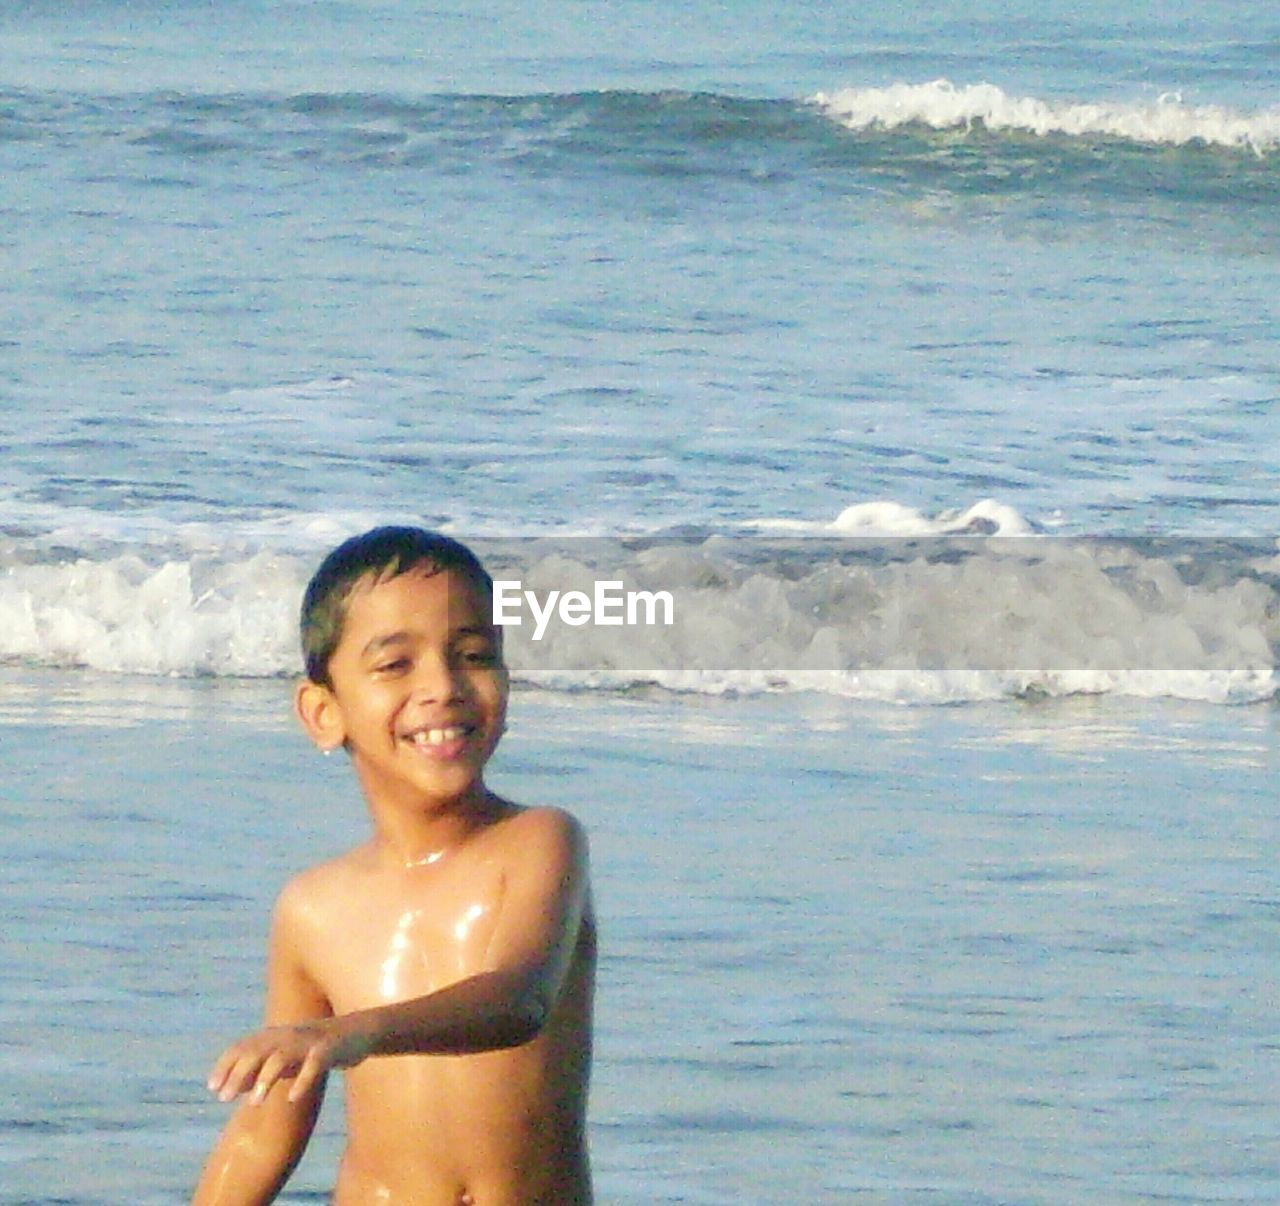 Boy playing at seaside